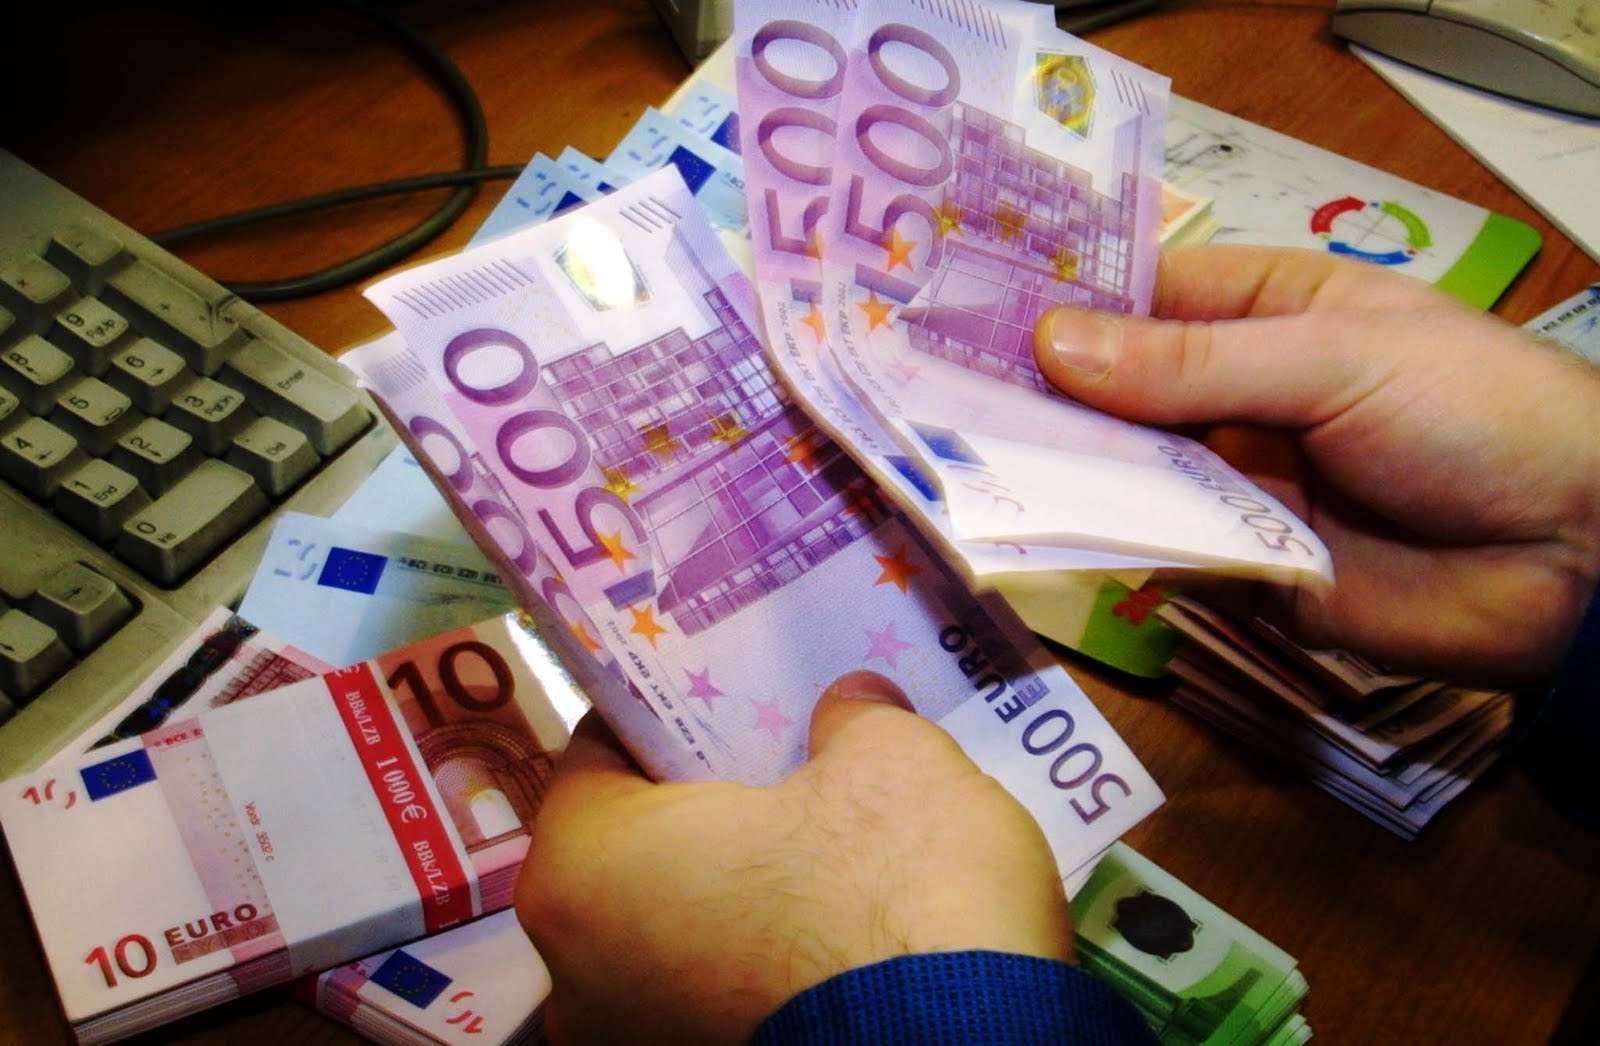 Στον Ευρωπαίο Εισαγγελέα το πόρισμα της Αρχής για το Ξέπλυμα Μαύρου Χρήματος